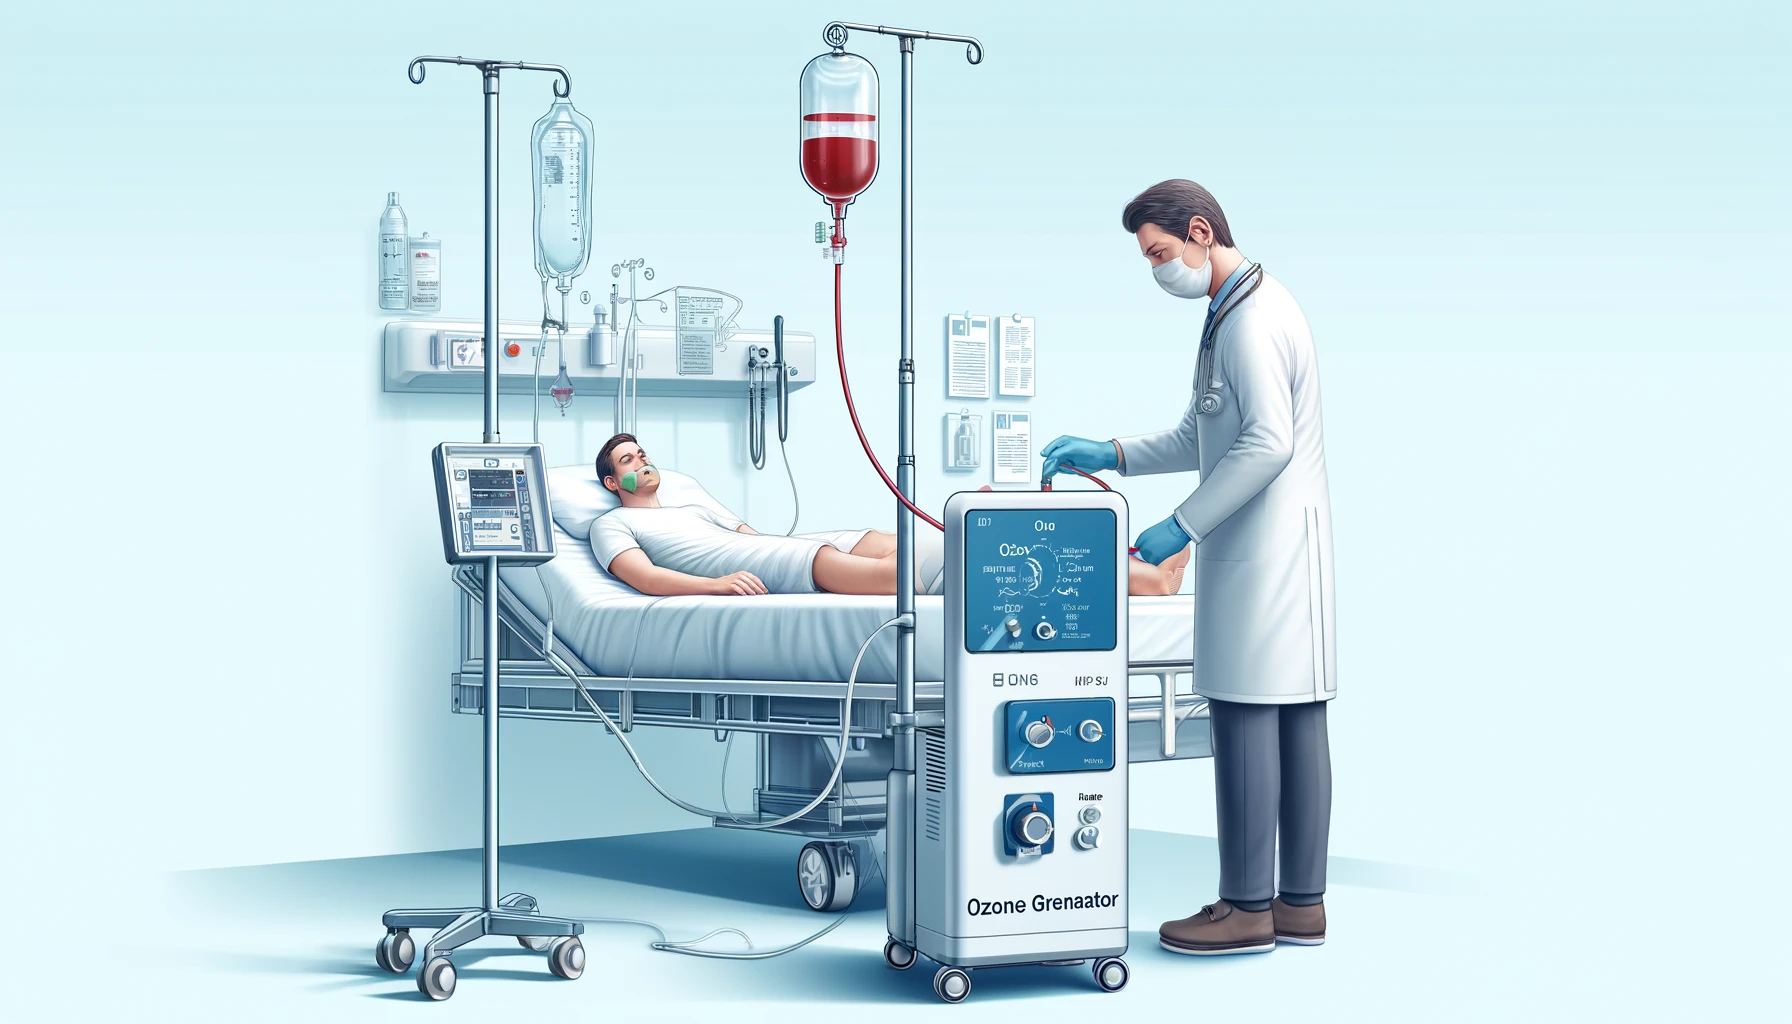 یک پزشک در حال انجام هموتراپی با گاز ازون برای یک بیمار در یک محیط پزشکی. بیمار روی تخت بیمارستان خوابیده و یک خط تزریق (IV) به یک دستگاه تولید ازون متصل است.